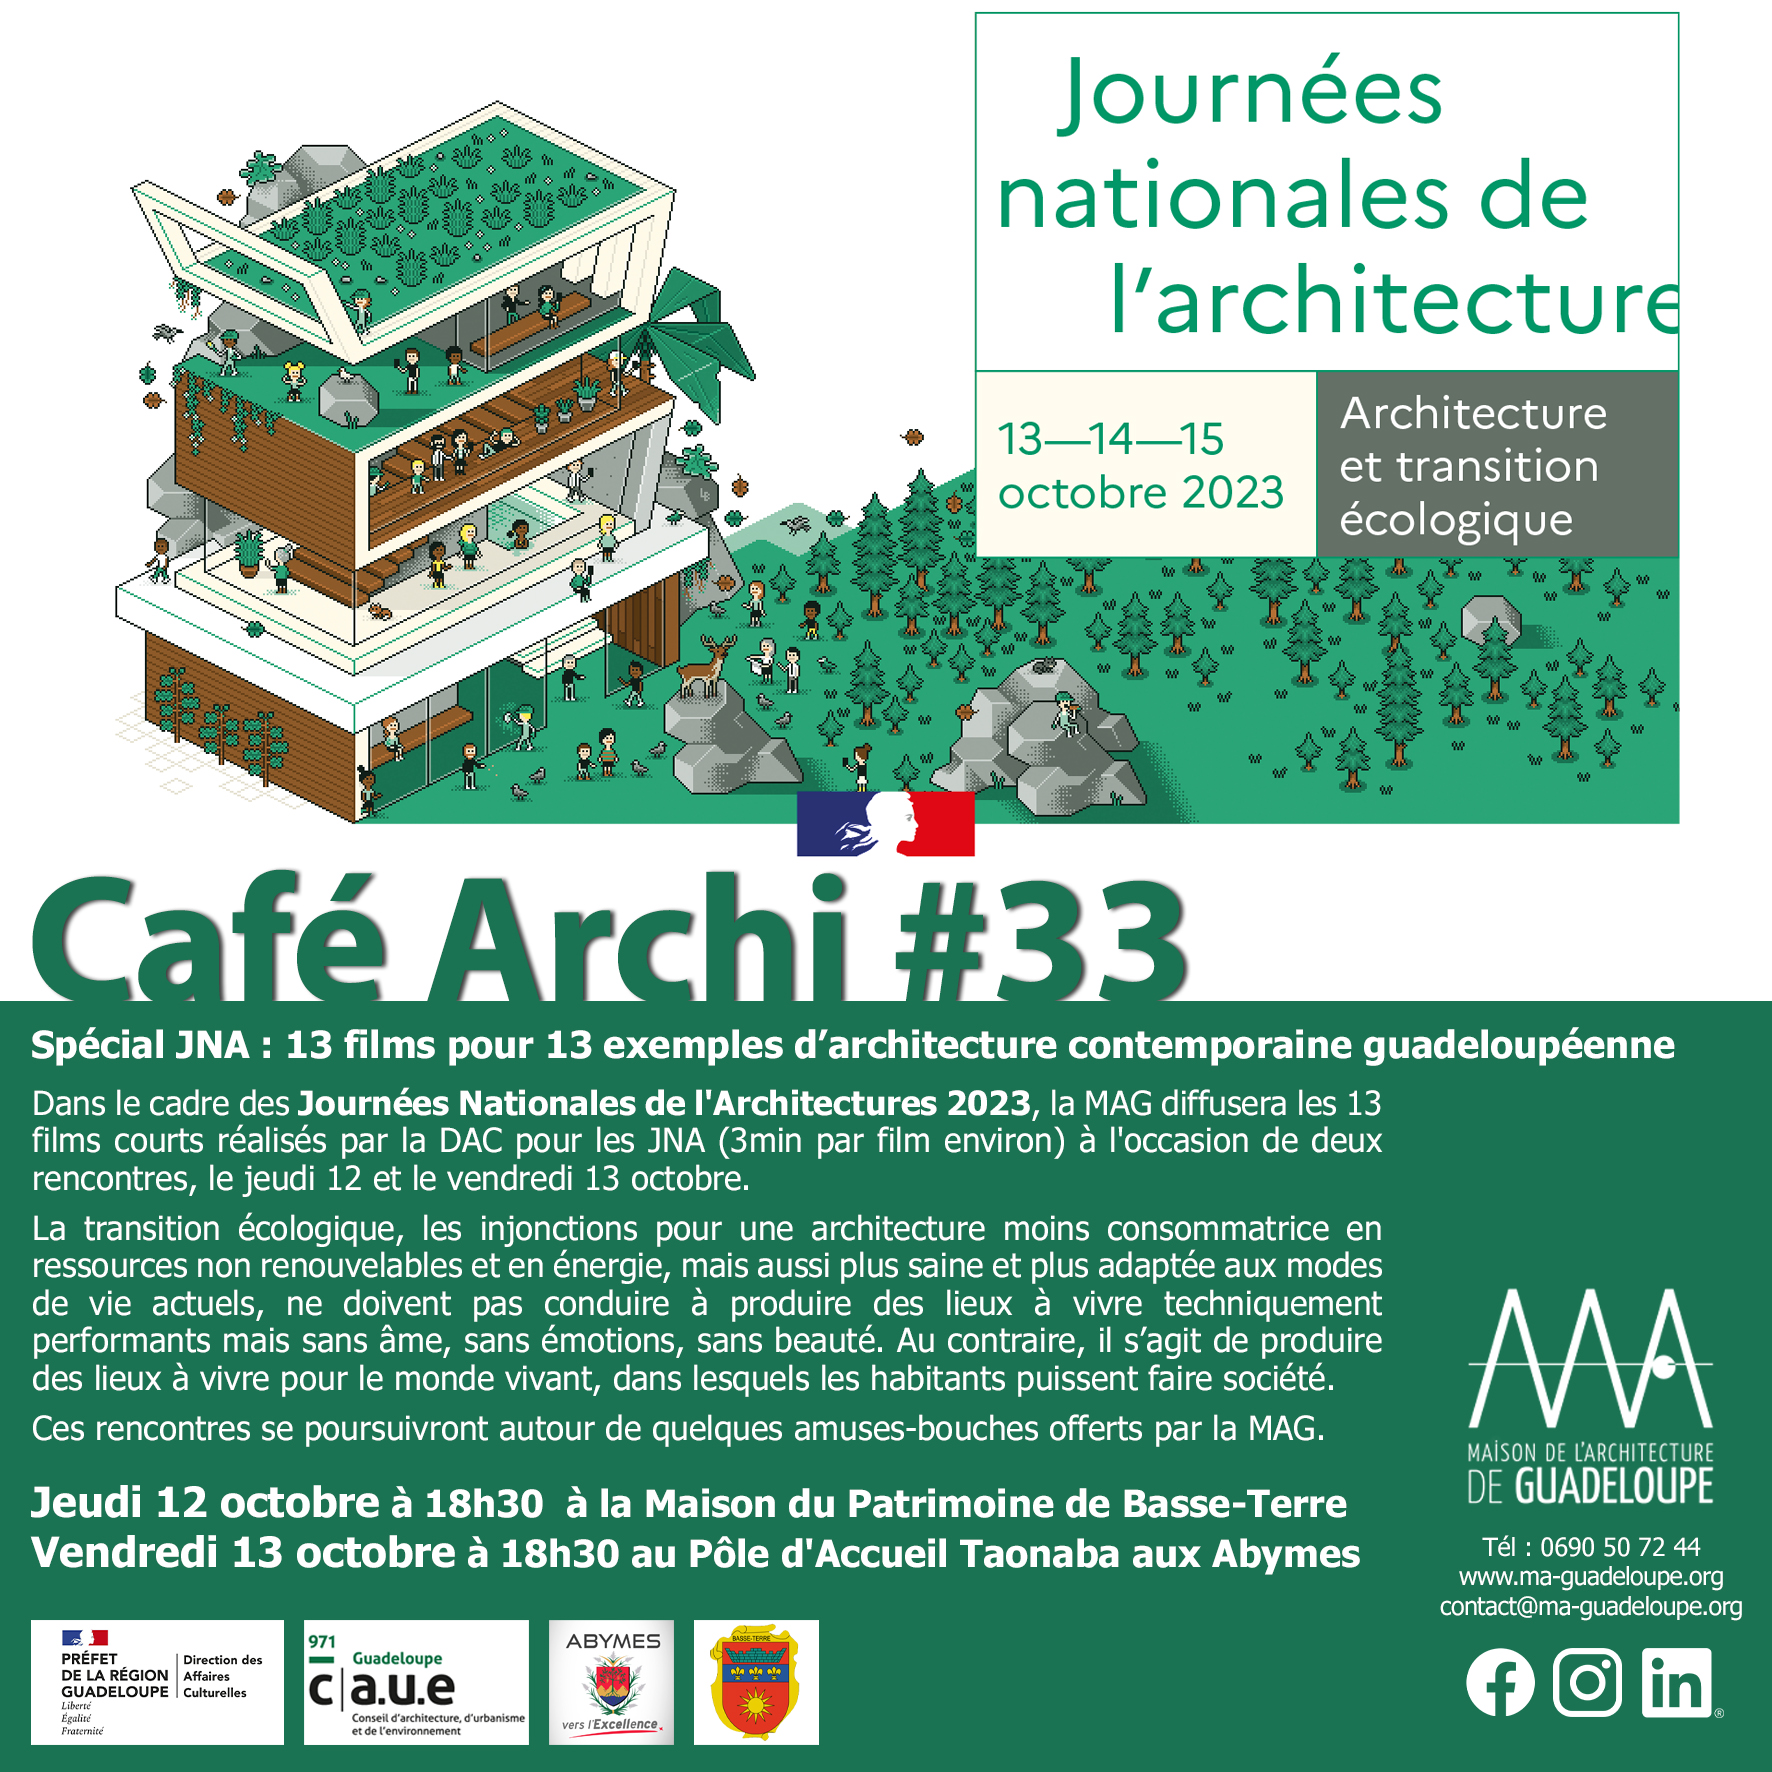 Lire la suite à propos de l’article Café Archi #33 spécial JNA : 13 films pour 13 exemples d’architecture contemporaine guadeloupéenne, jeudi 12 et vendredi 13 octobre